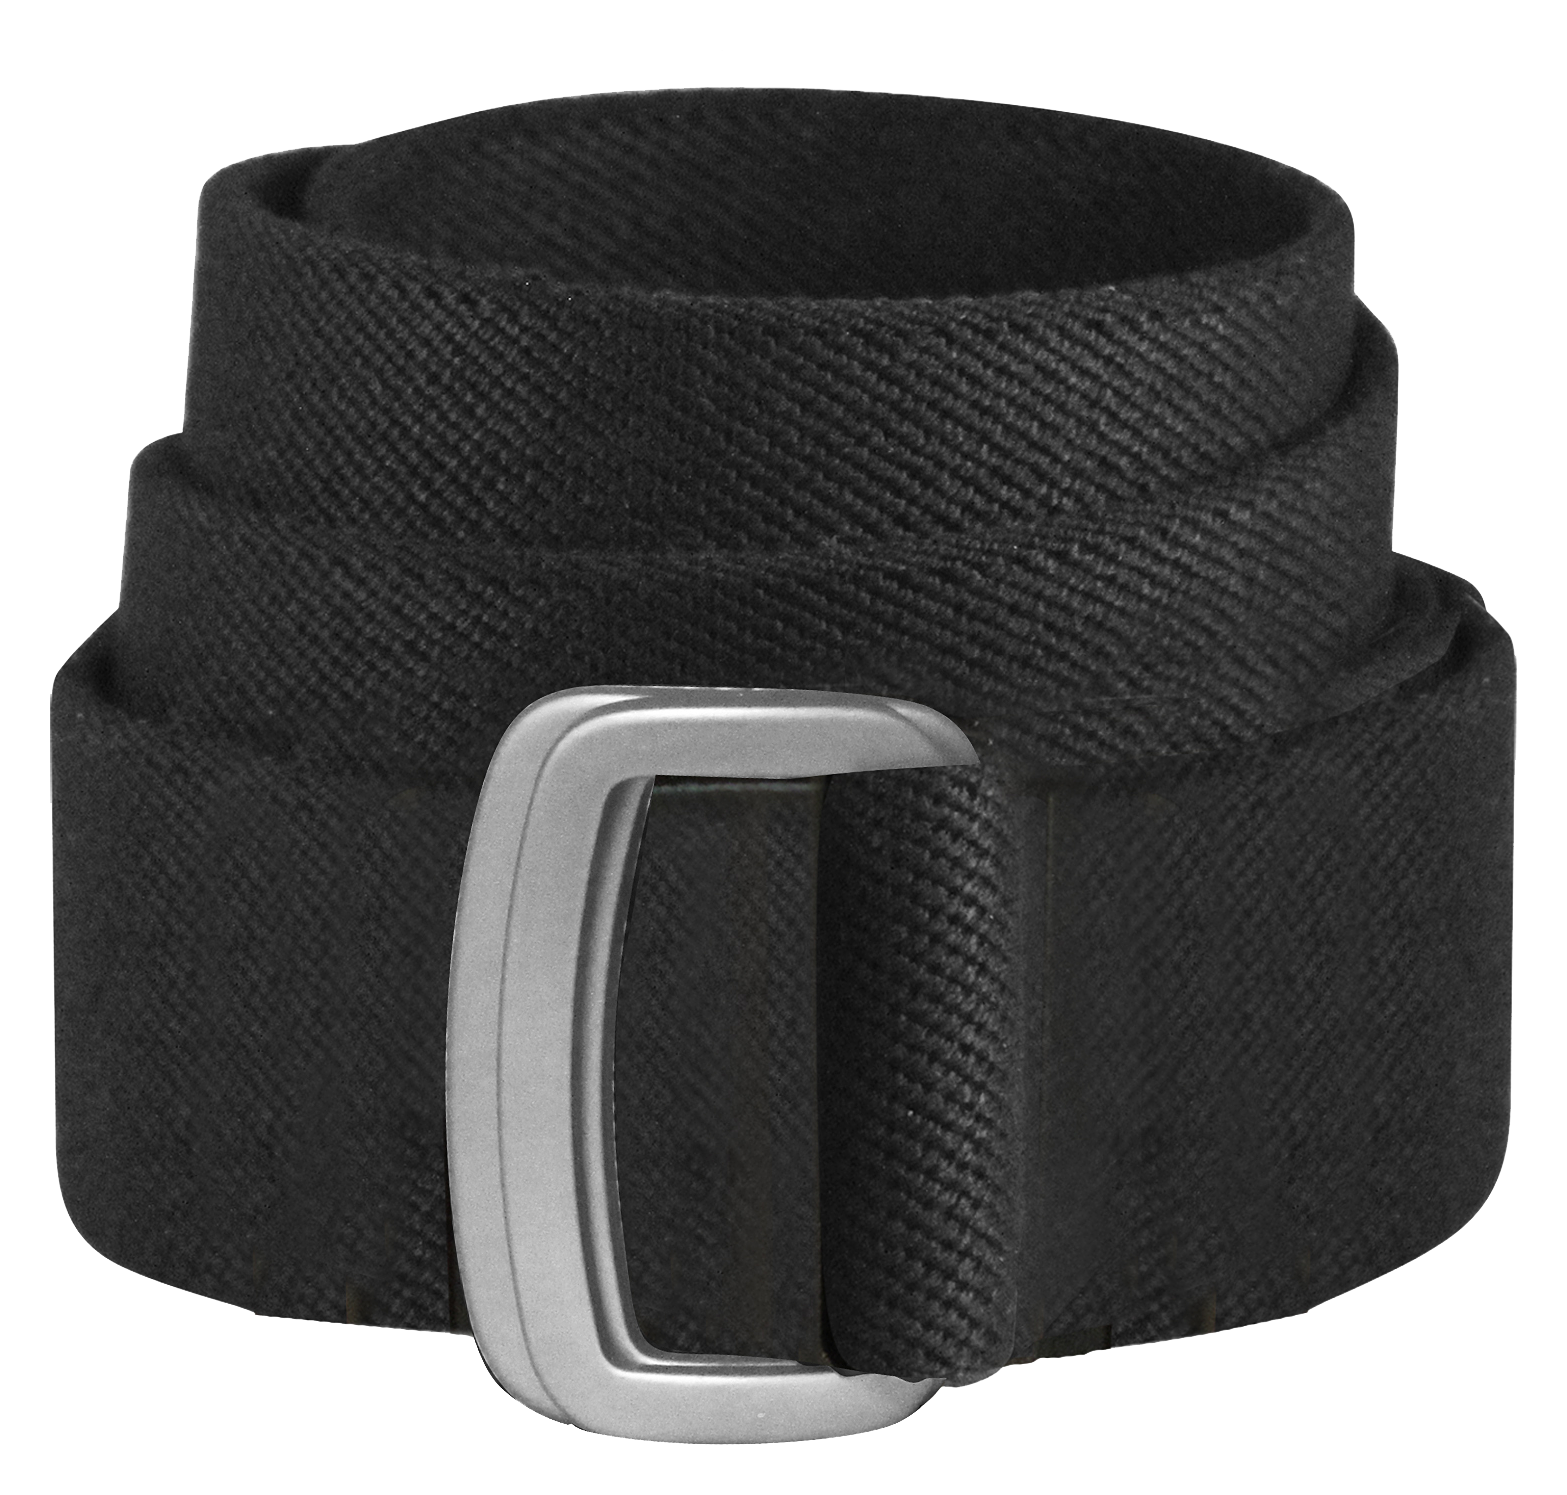 Bison Designs Subtle D-Ring Belt for Men - Black - 2XL